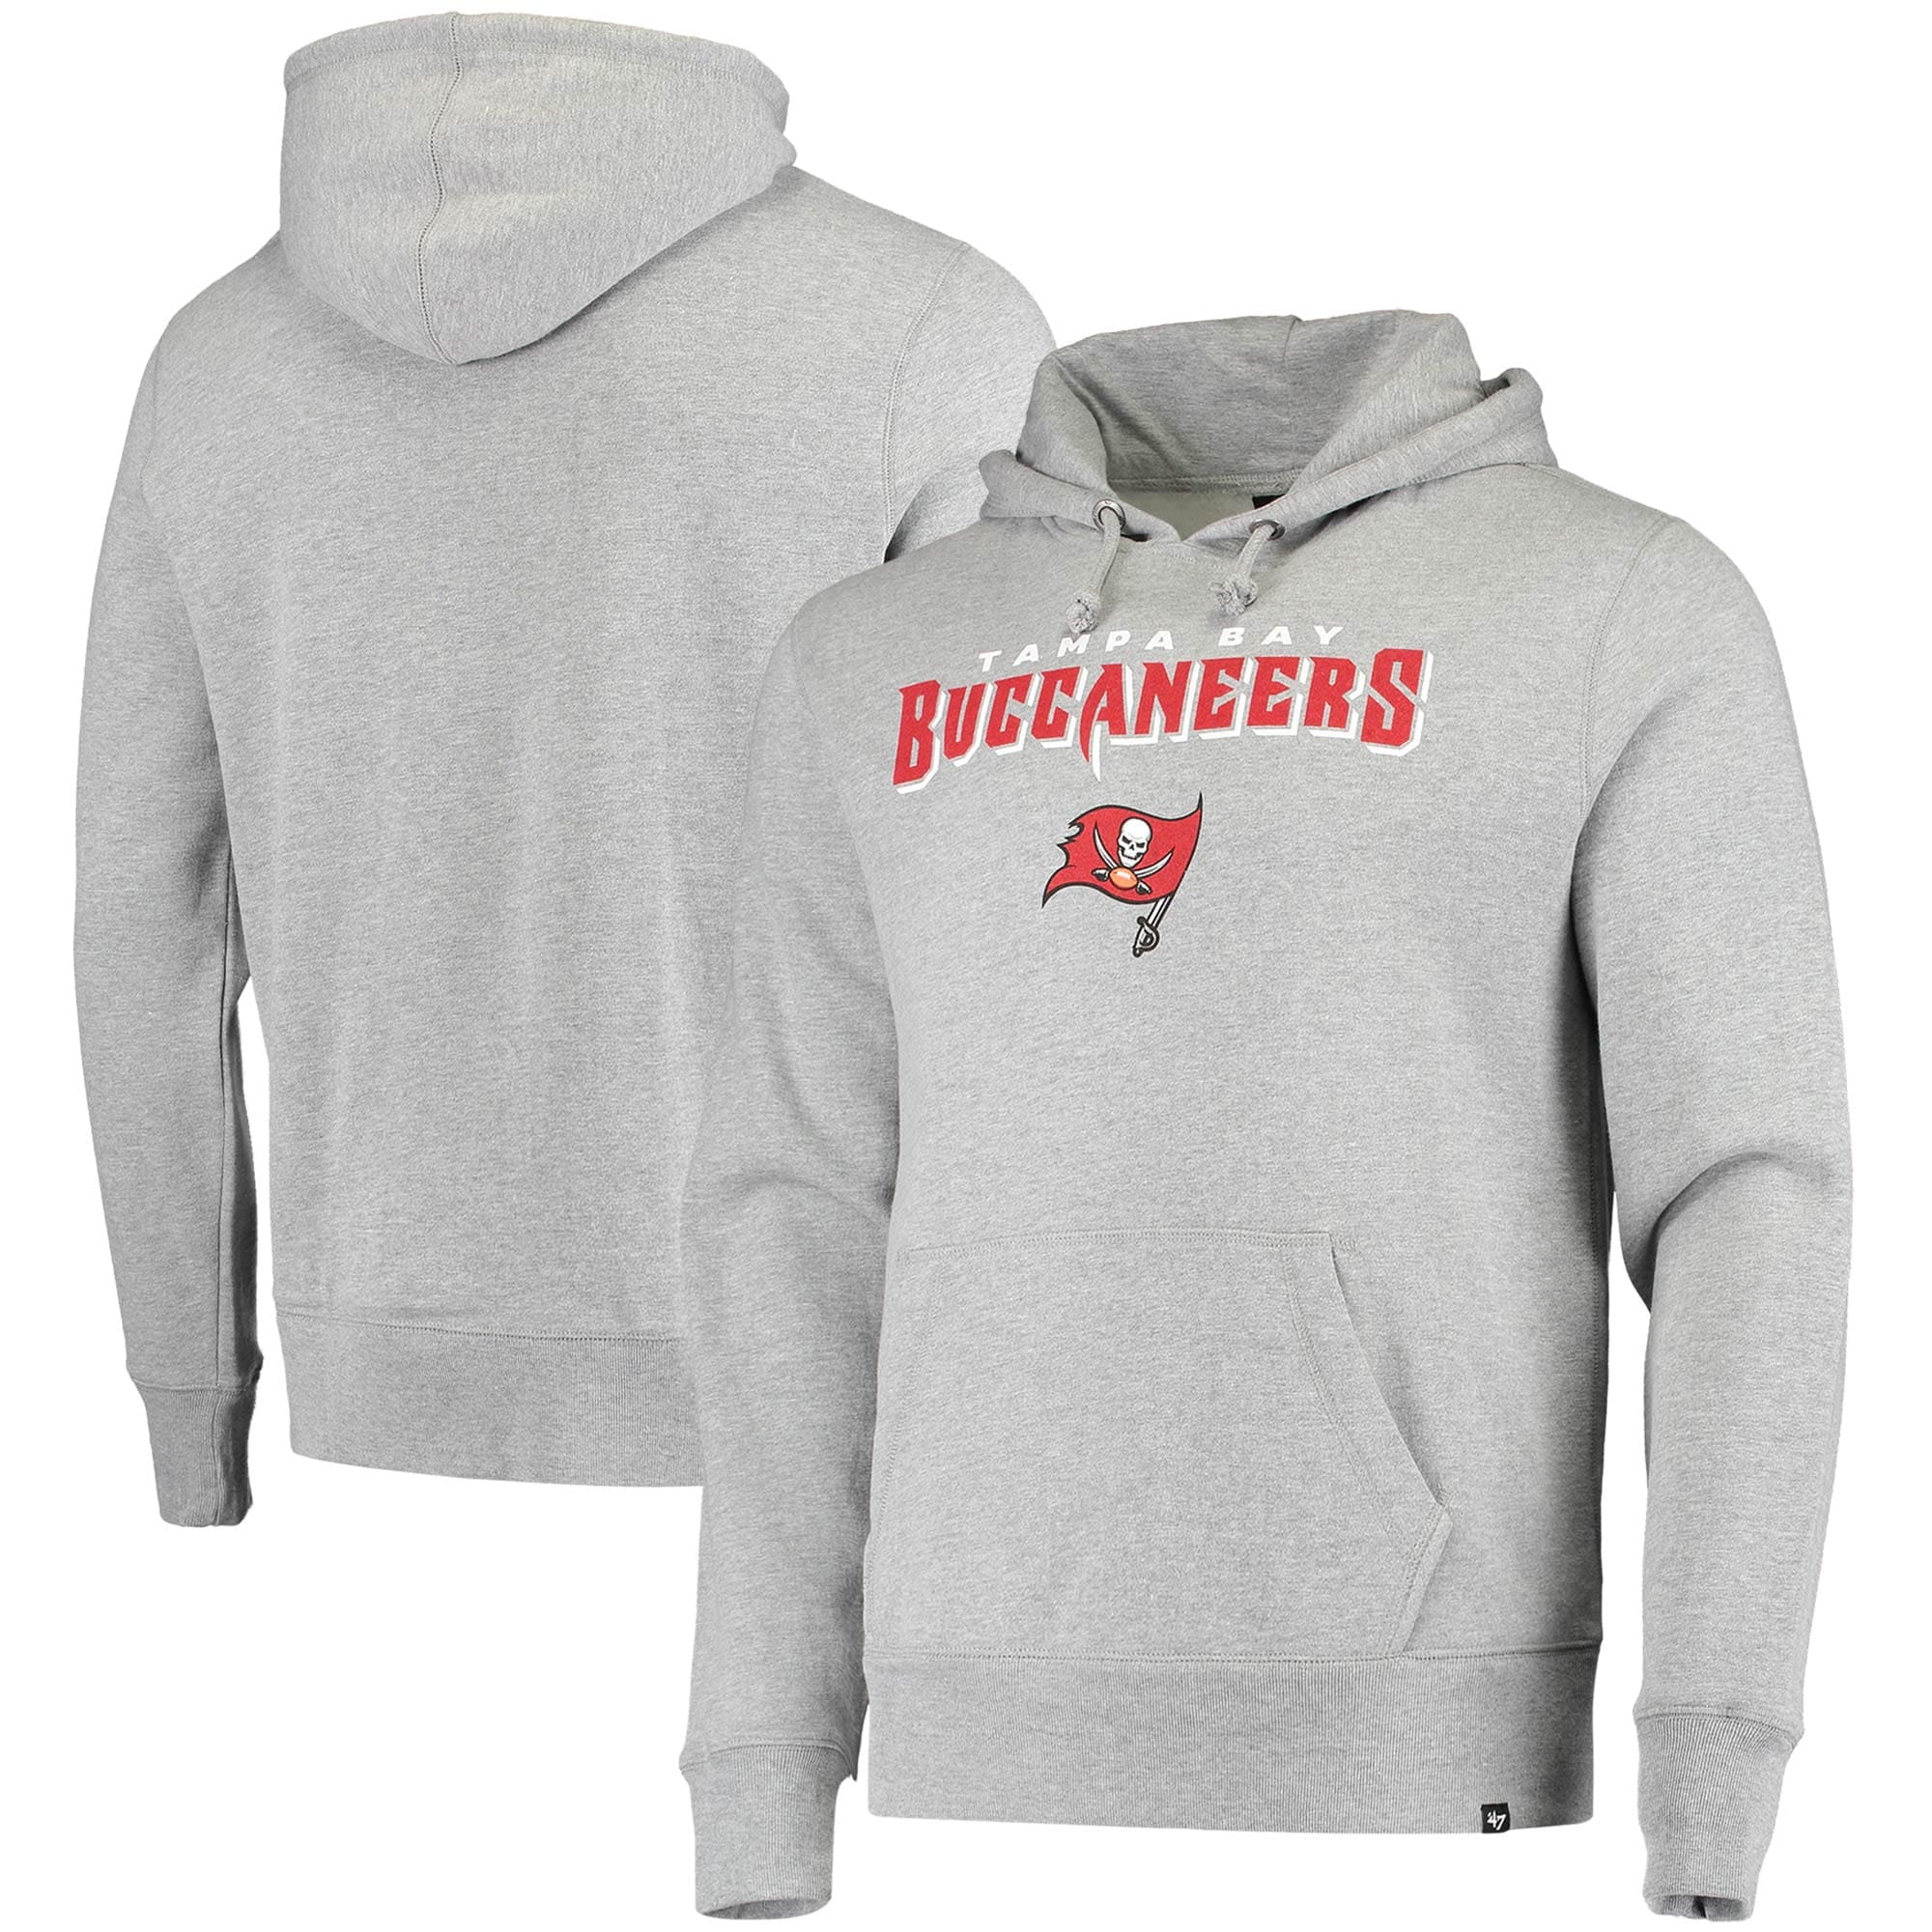 tampa bay buccaneers hoodie